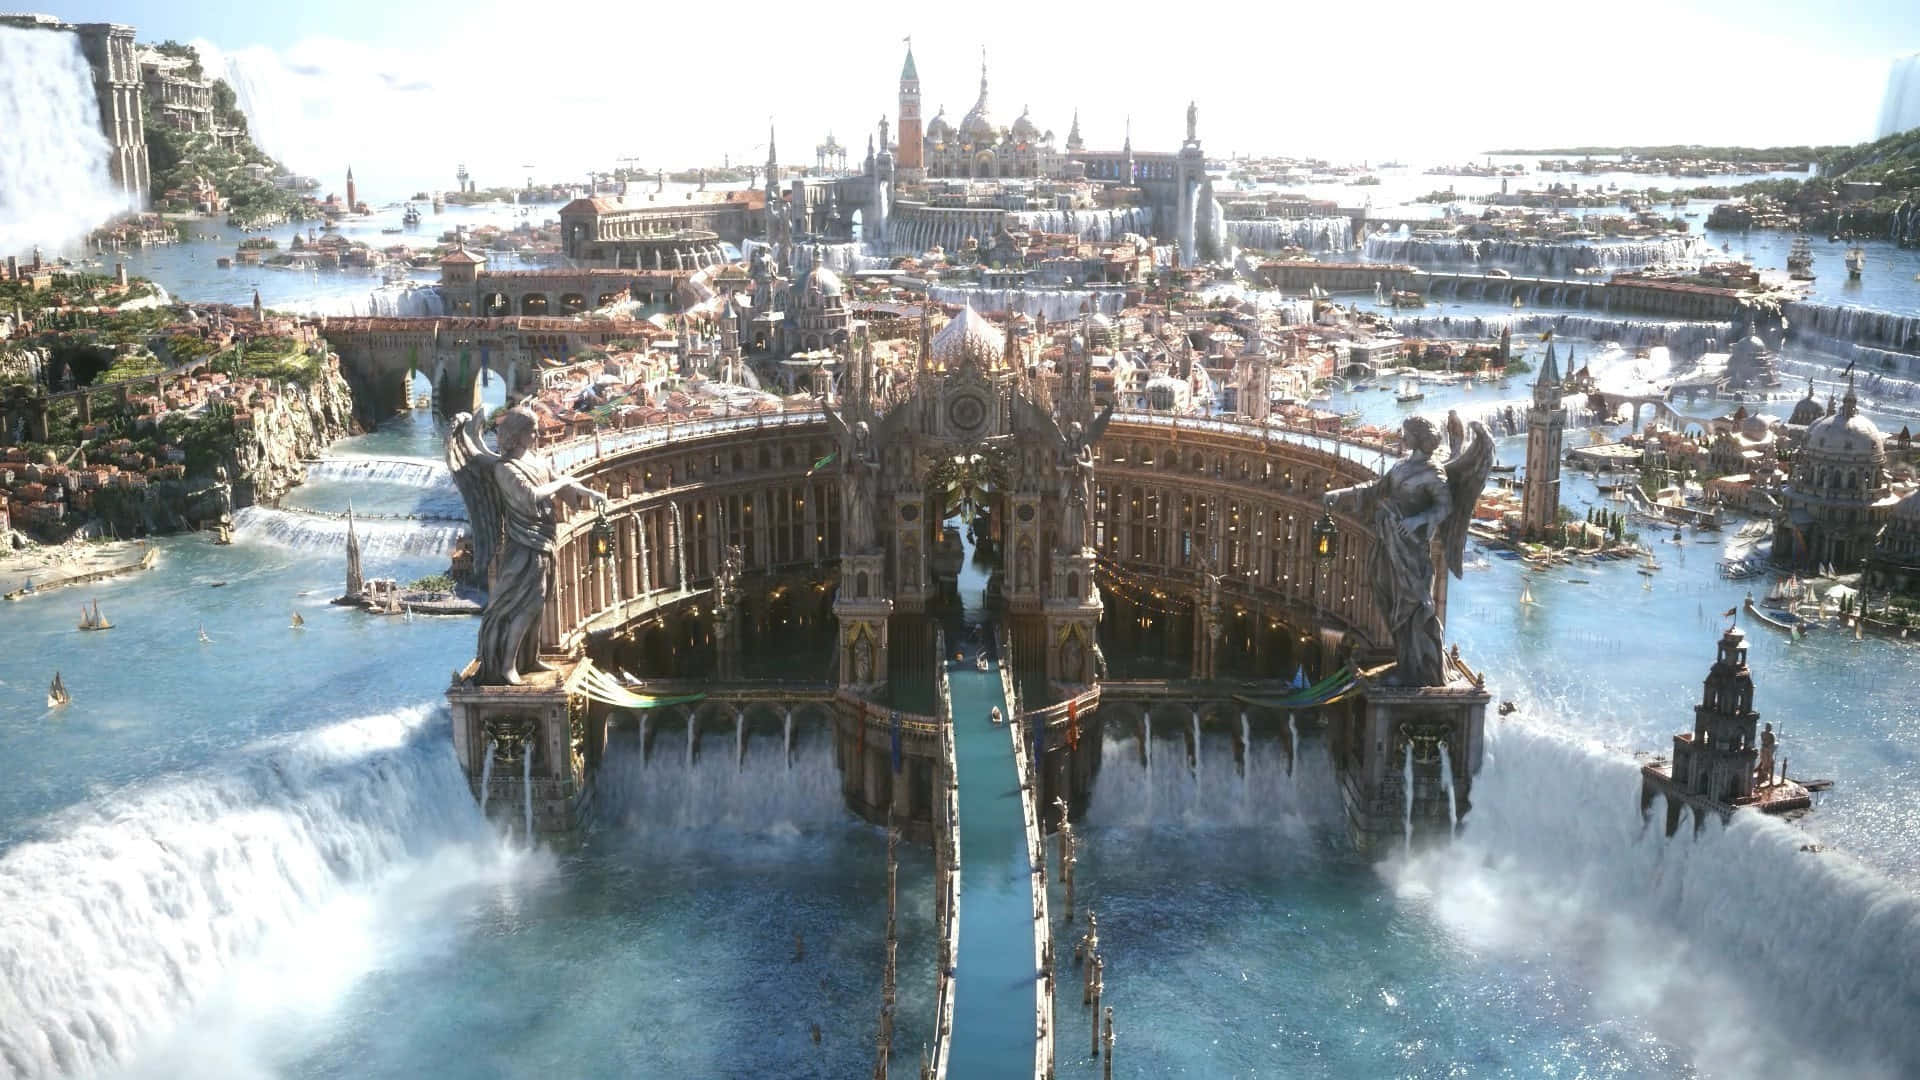 Altissia City Final Fantasy XV Background